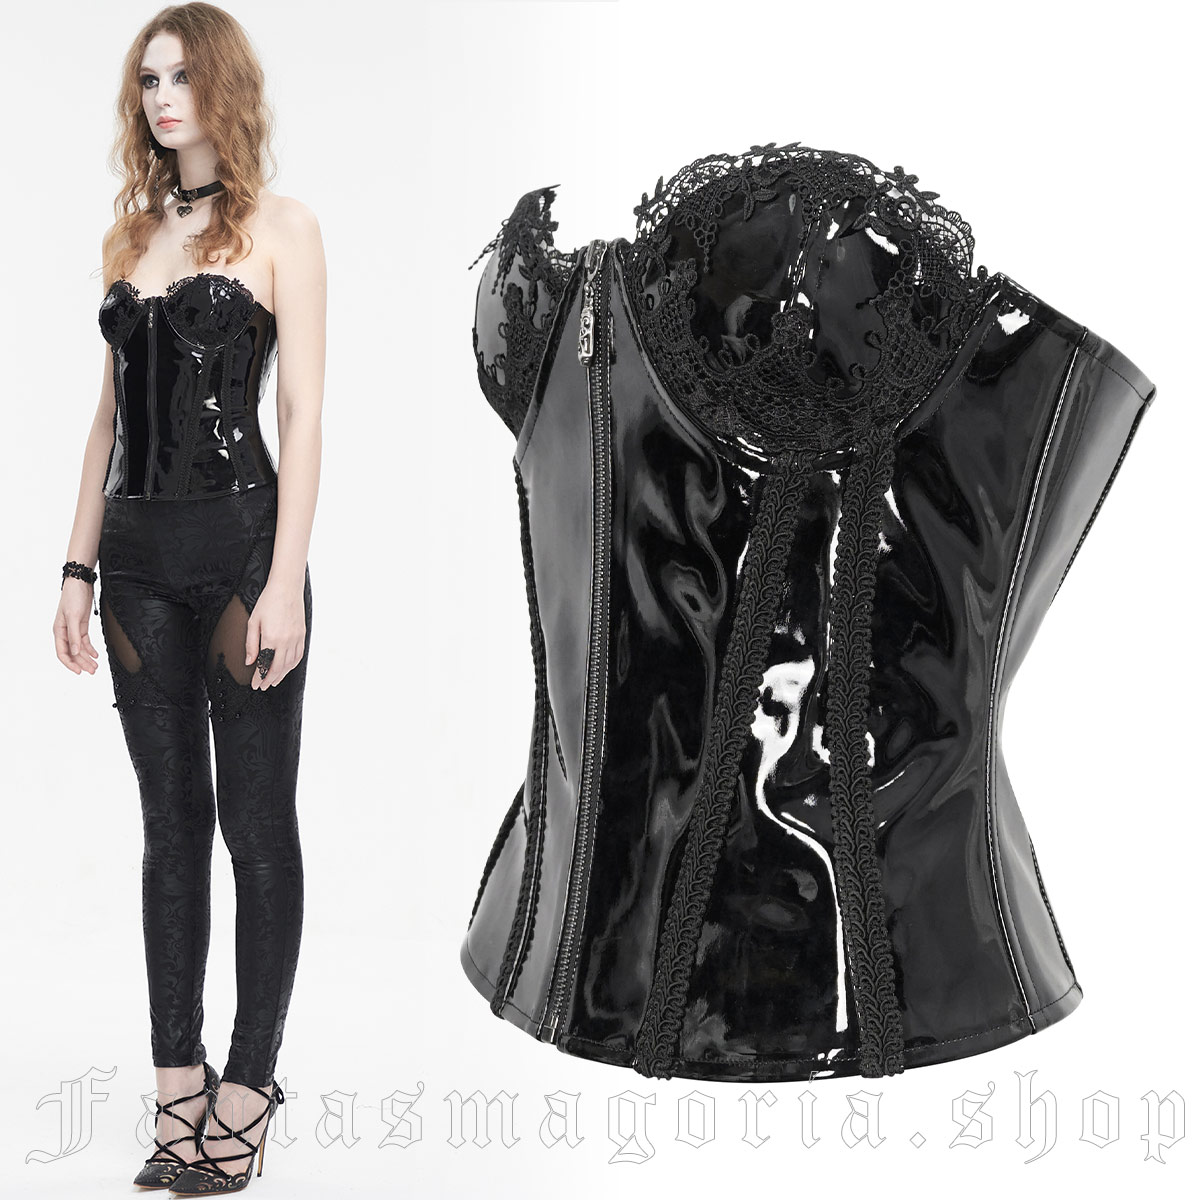 Angelique Black PVC Corset - Devil Fashion